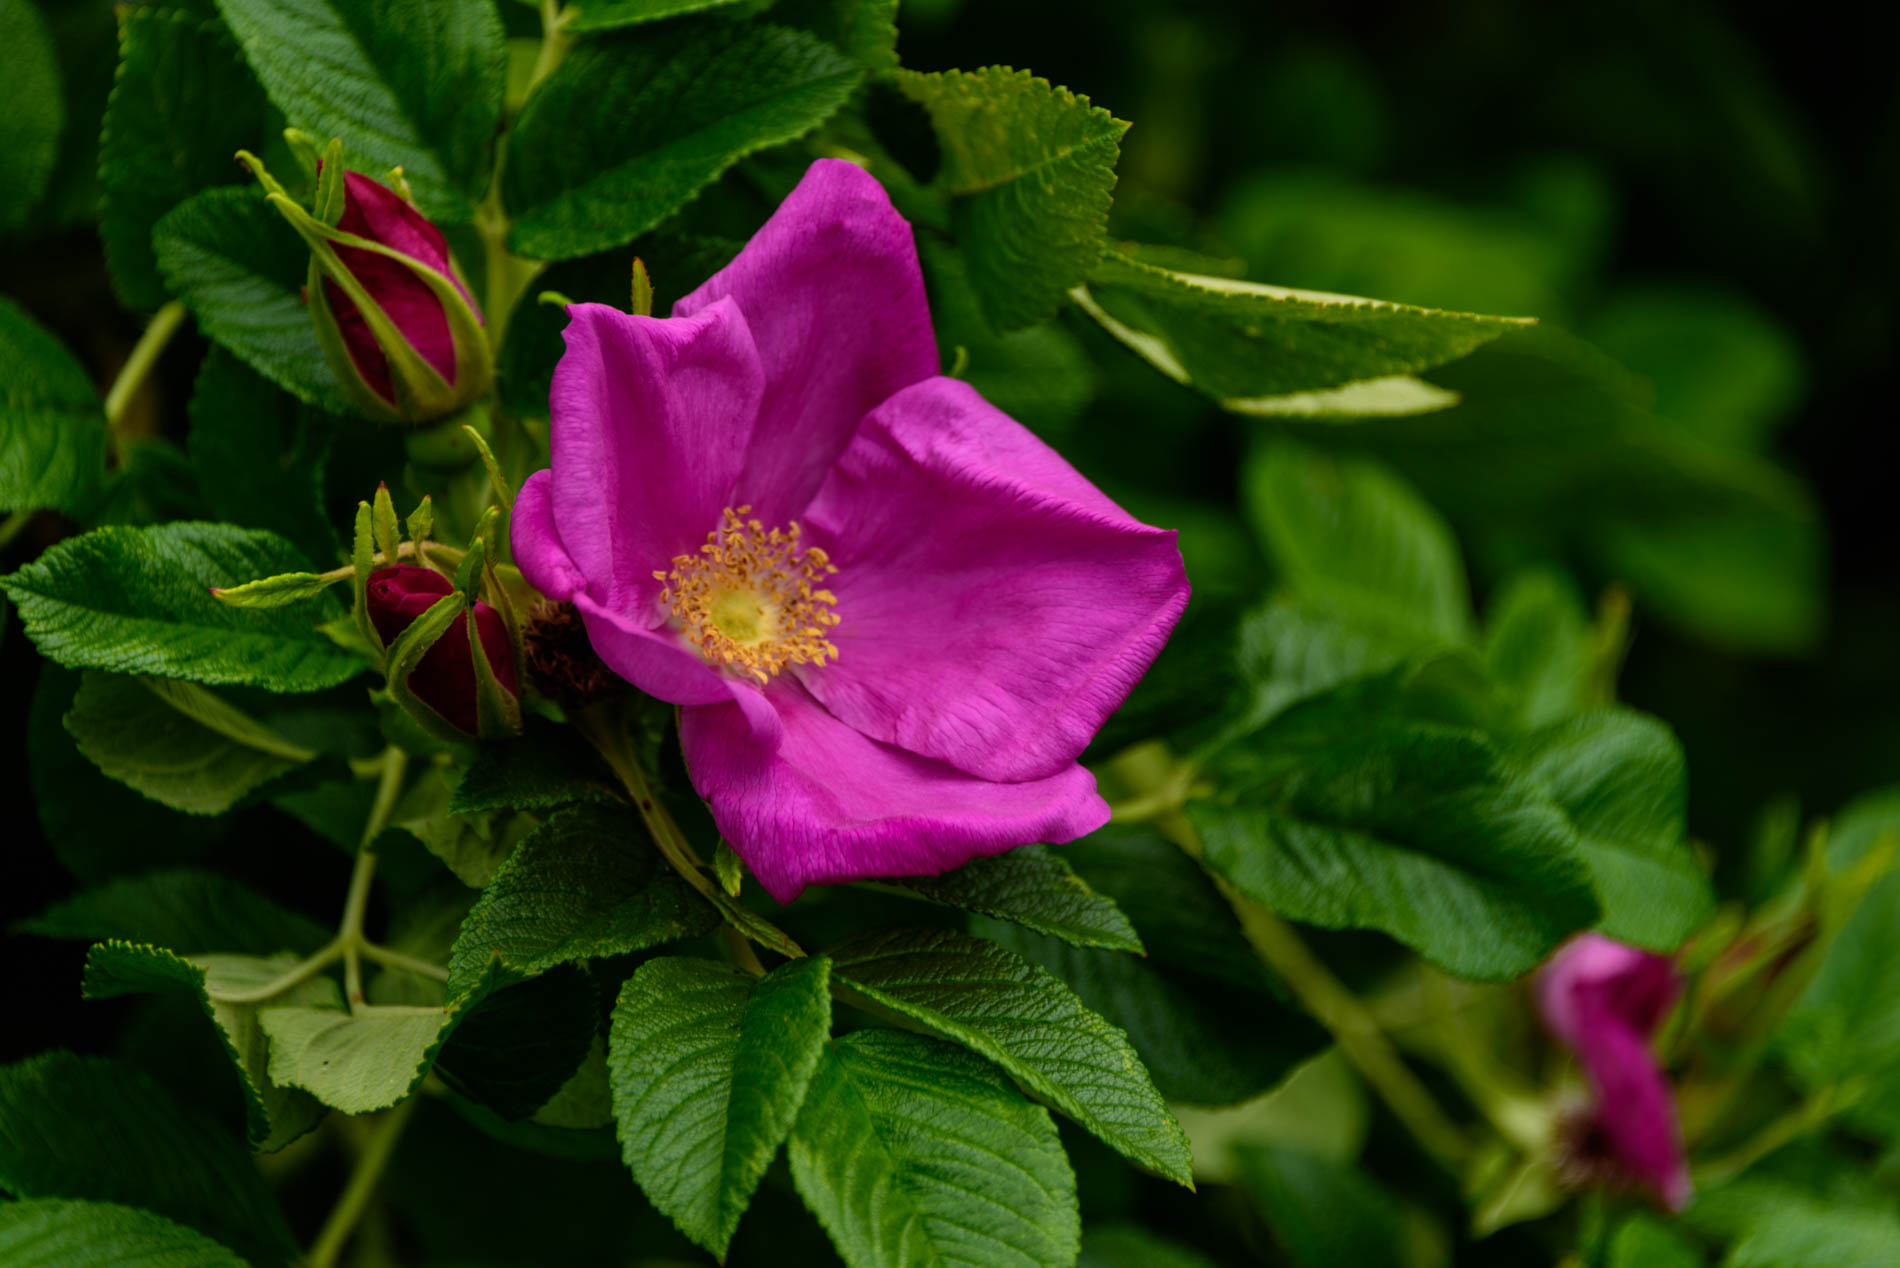 Arda, Botanica, England, Hampshire, Mottisfont, National Trust, Roses, The World